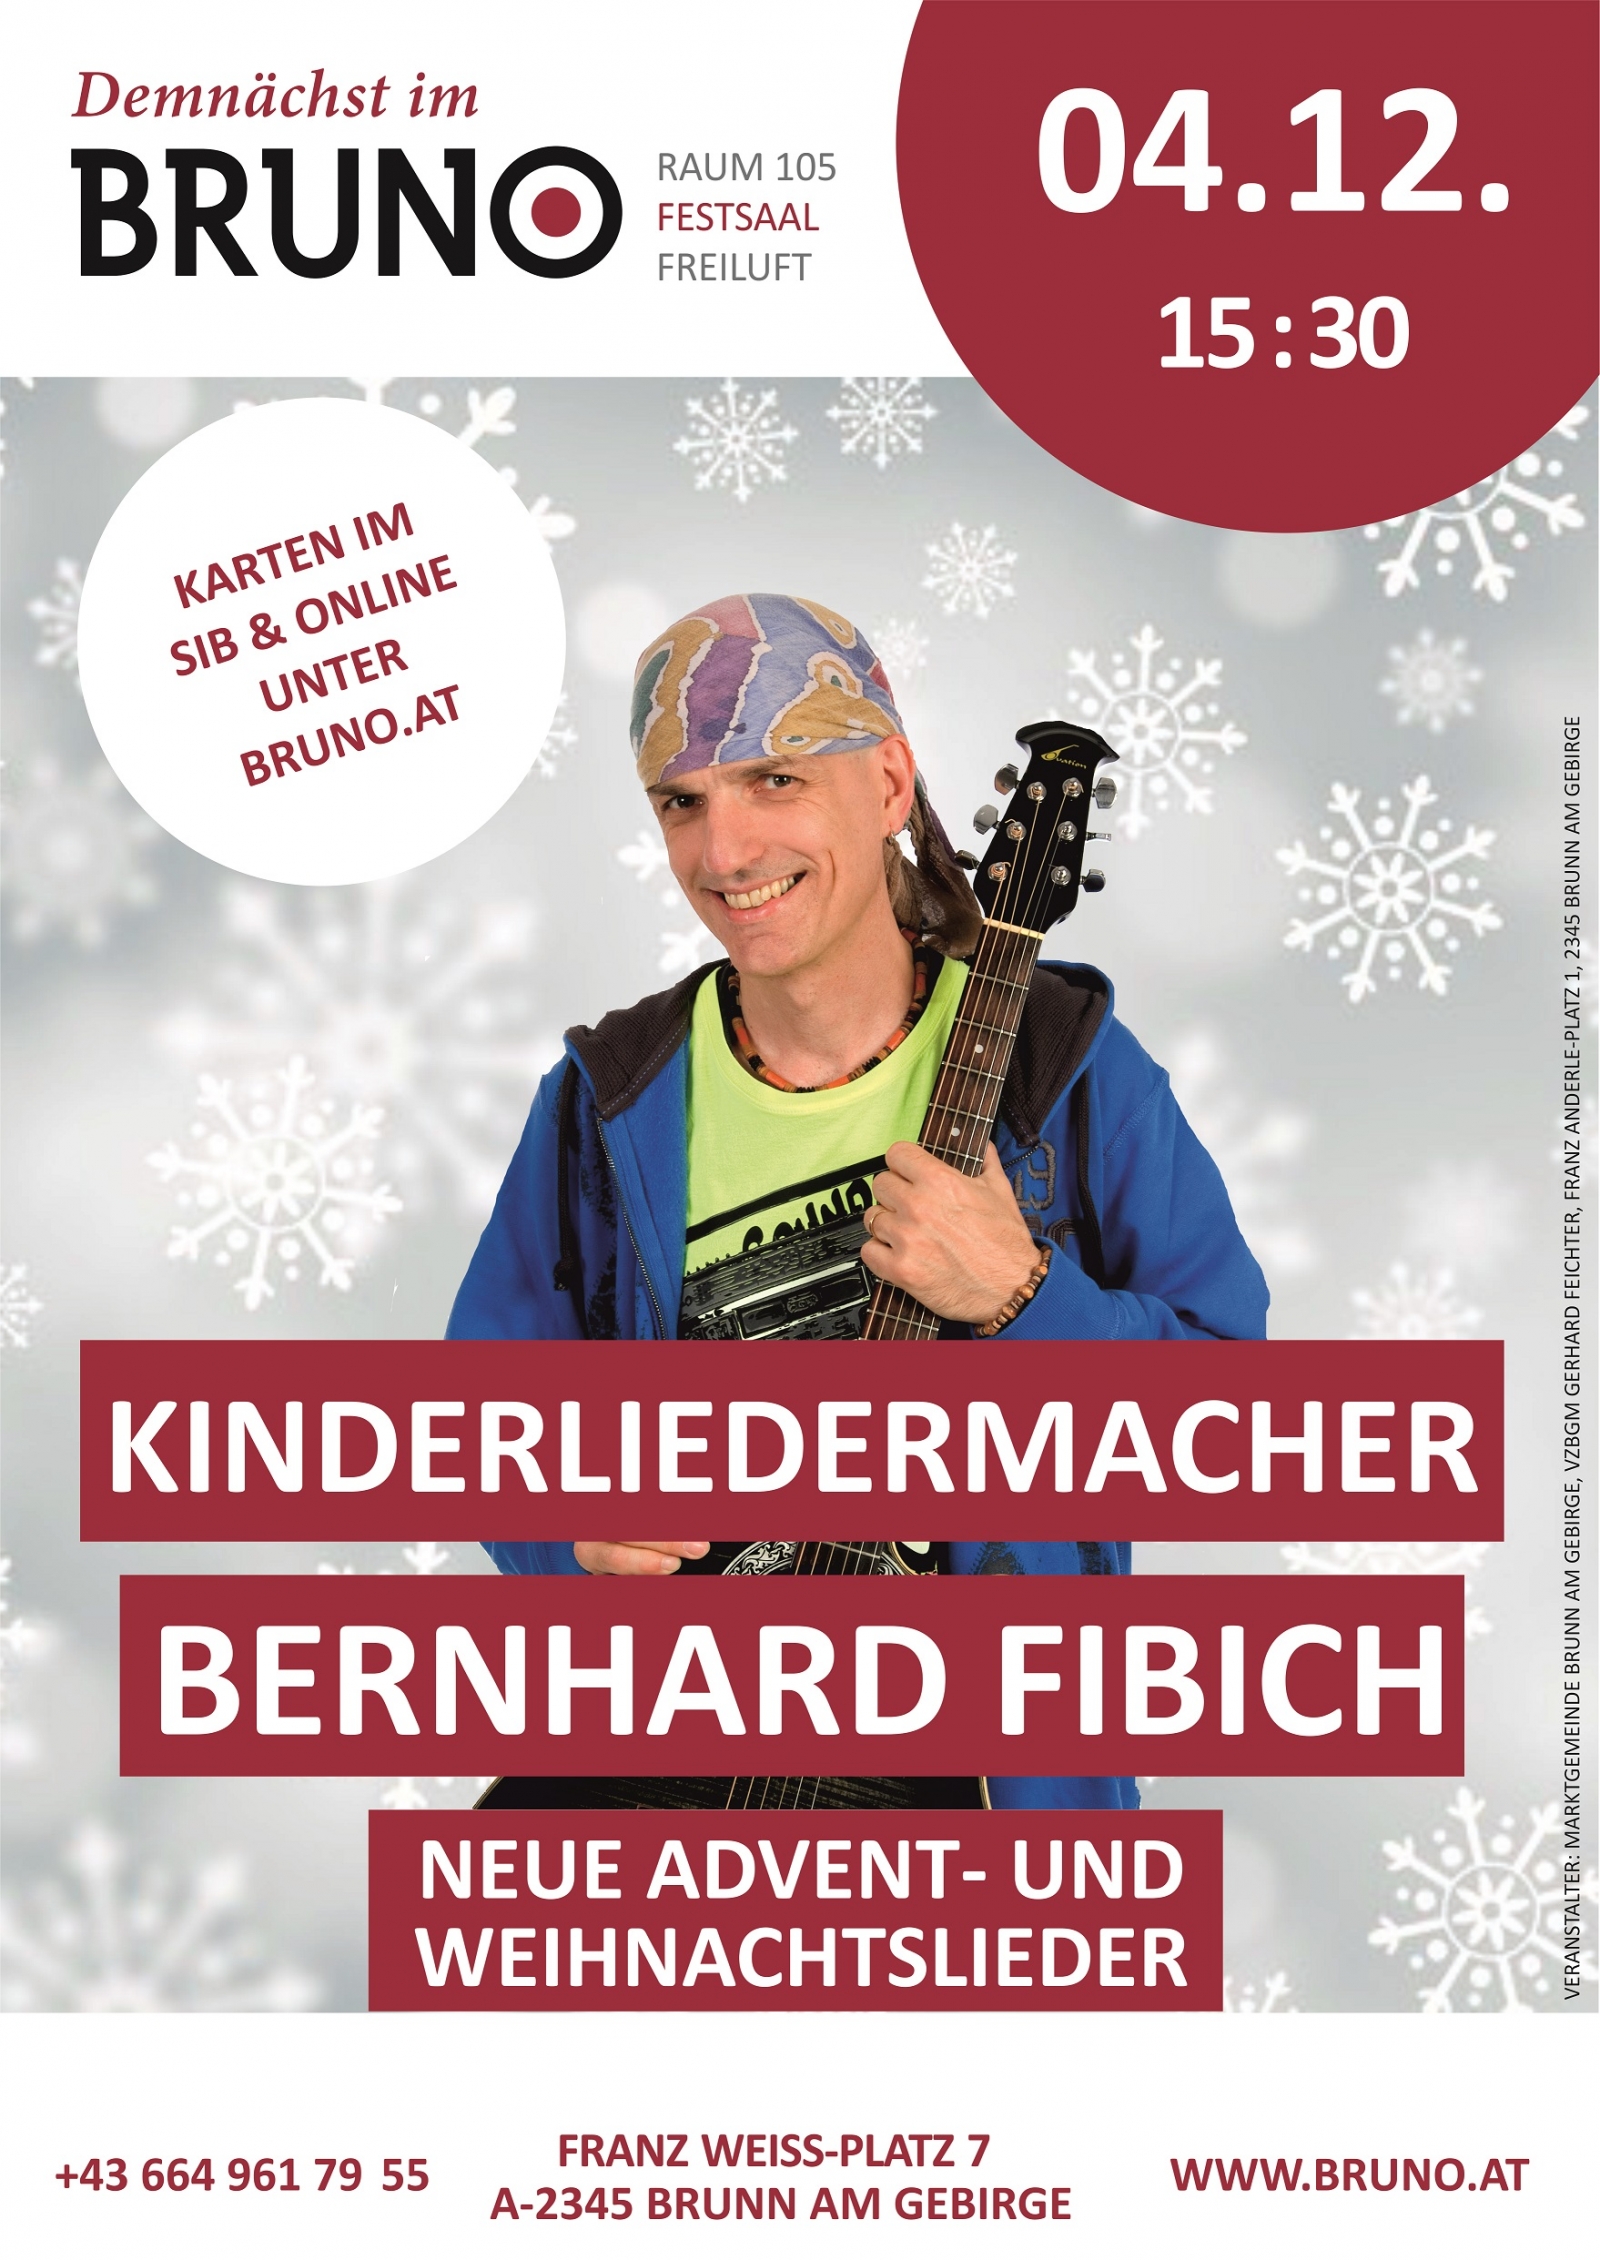 Bernhard Fibich – „Neue Advent- und Weihnachtslieder